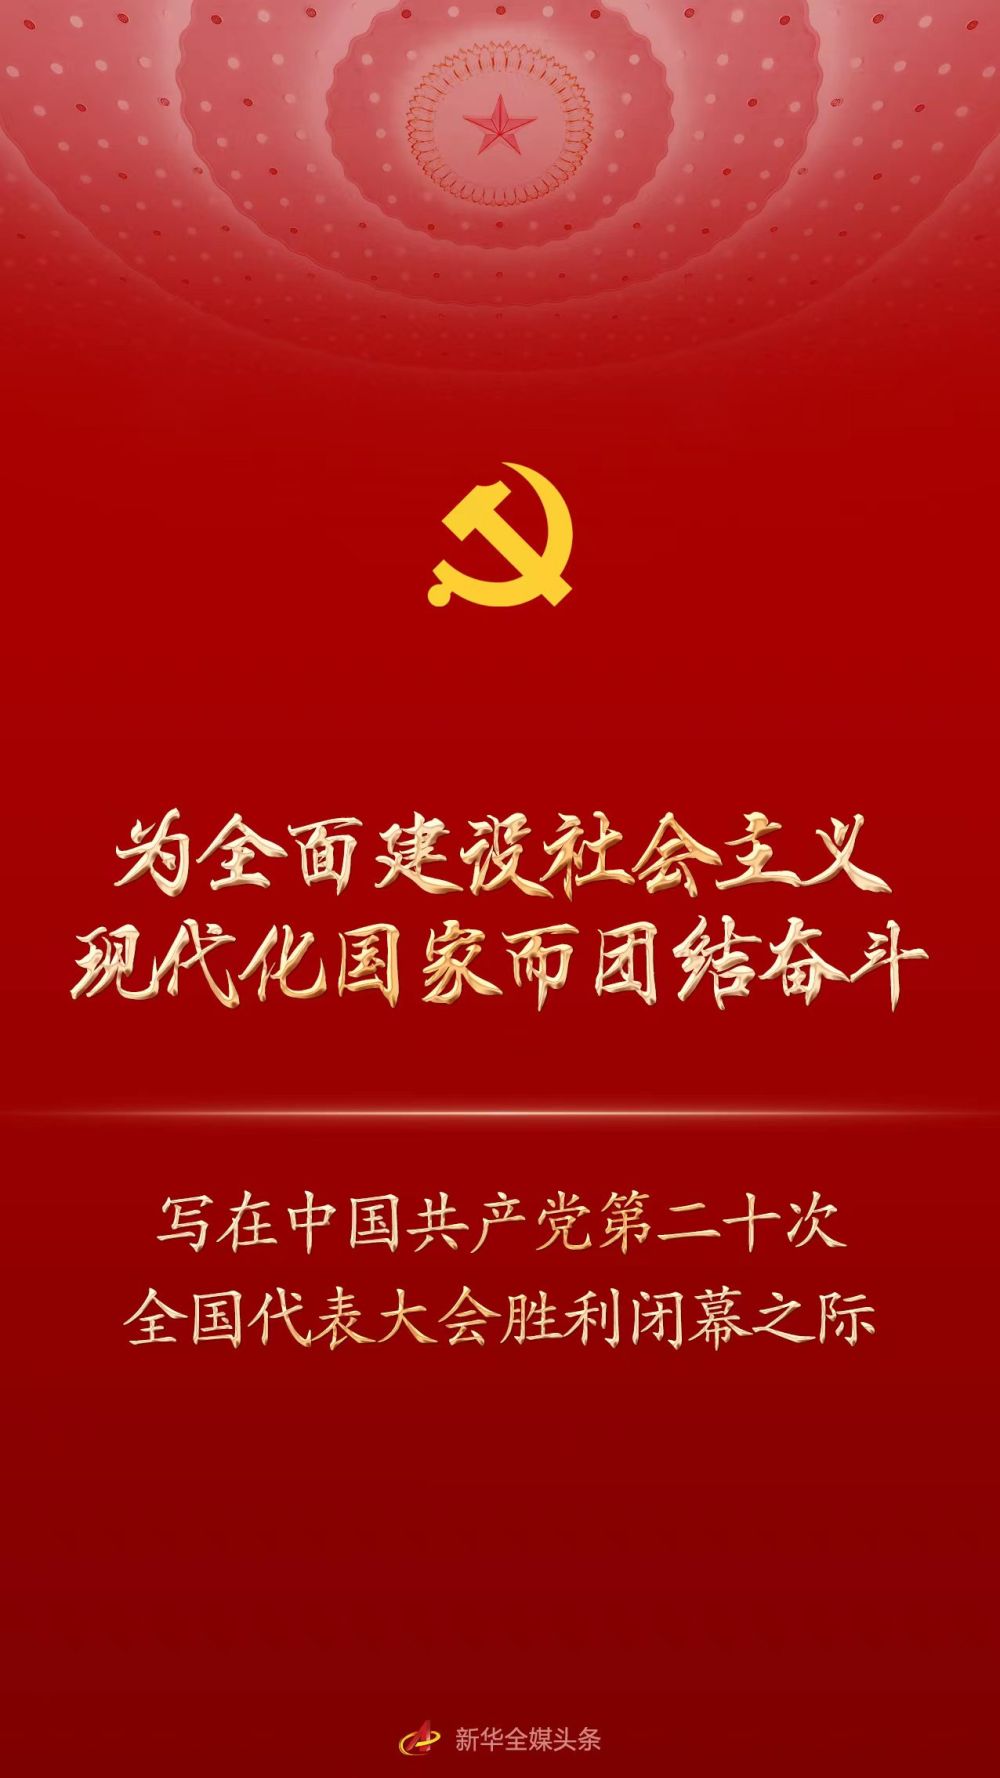 为全面建设社会主义现代化国家而团结奋斗——写在中国共产党第二十次全国代表大会胜利闭幕之际